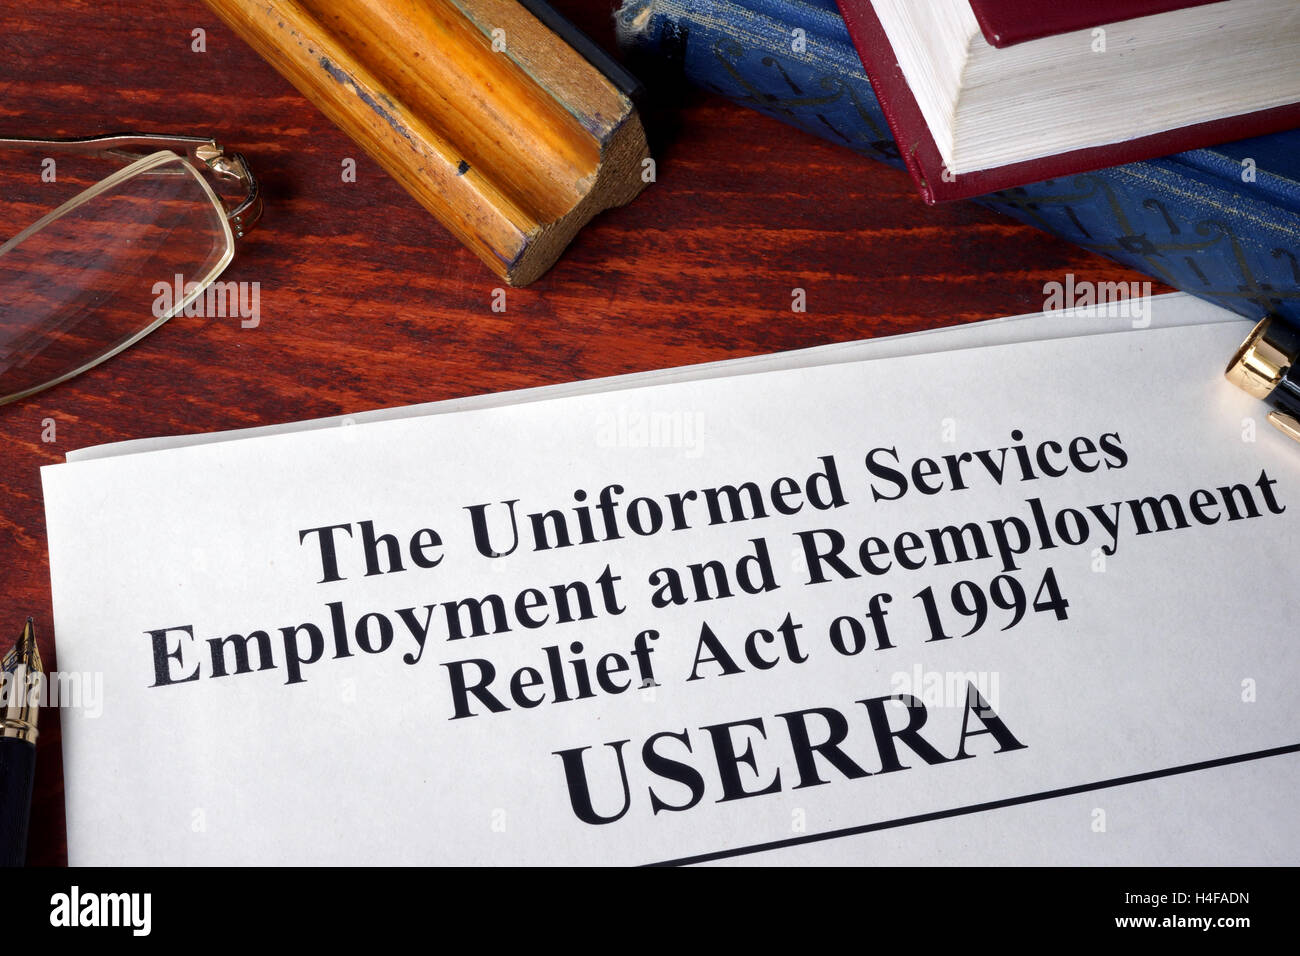 Die uniformierten Diensten Beschäftigung und Wiedereinstellung Relief Act von 1994 (USERRA) Stockfoto